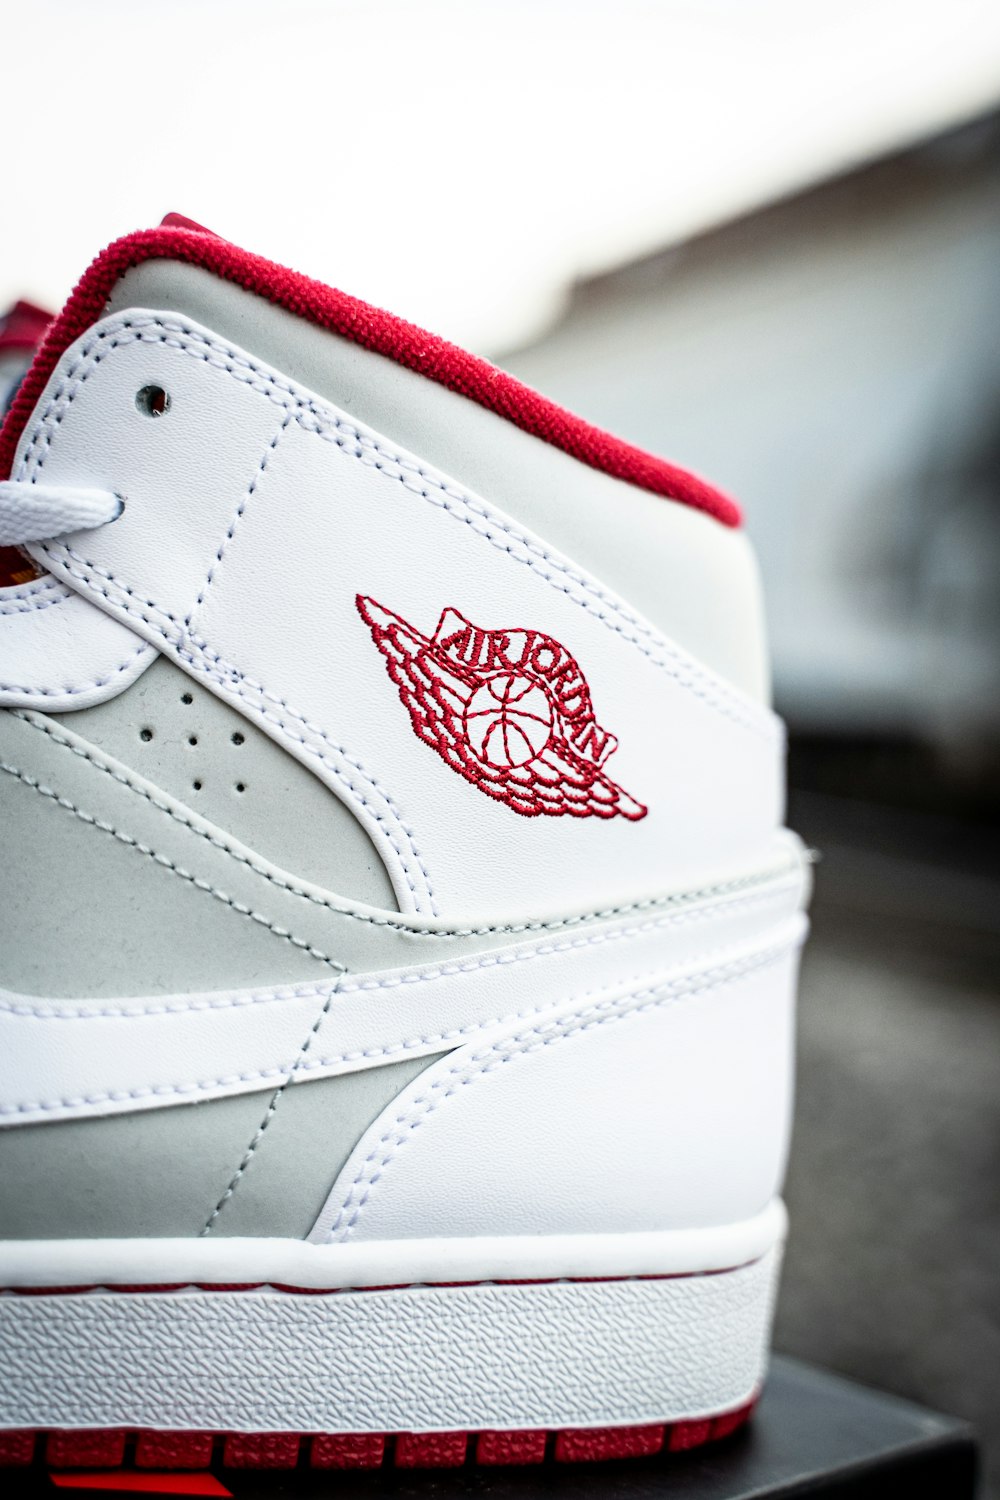 white and red nike air jordan 1 shoe photo – Free Jordans Image on Unsplash